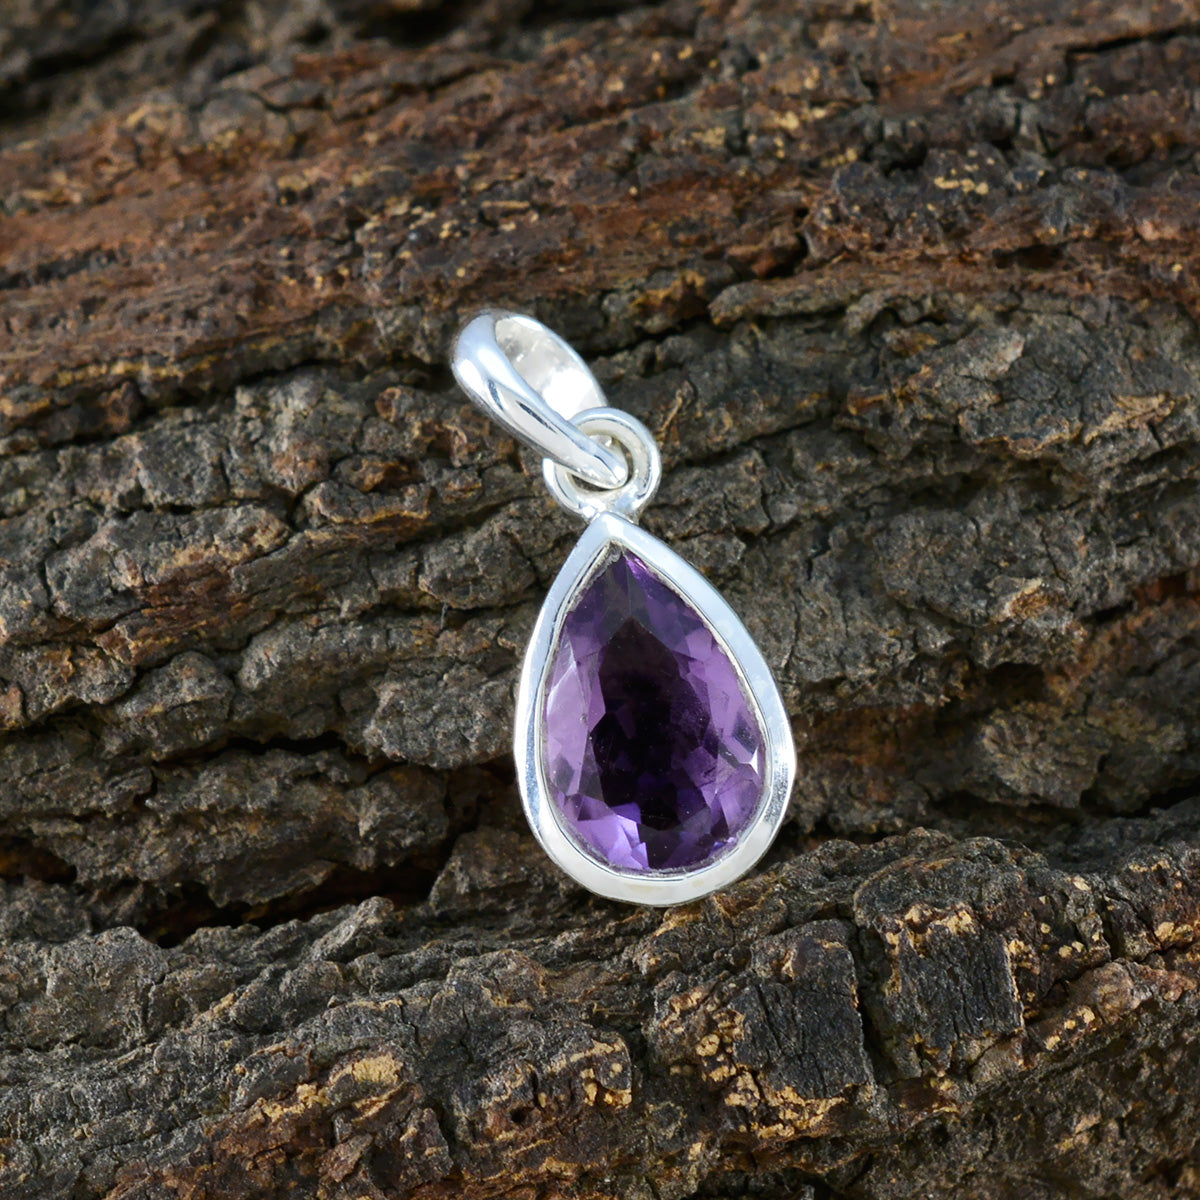 Серебряный кулон riyo с красивыми драгоценными камнями, грушей, ограненным фиолетовым аметистом, подарок жене